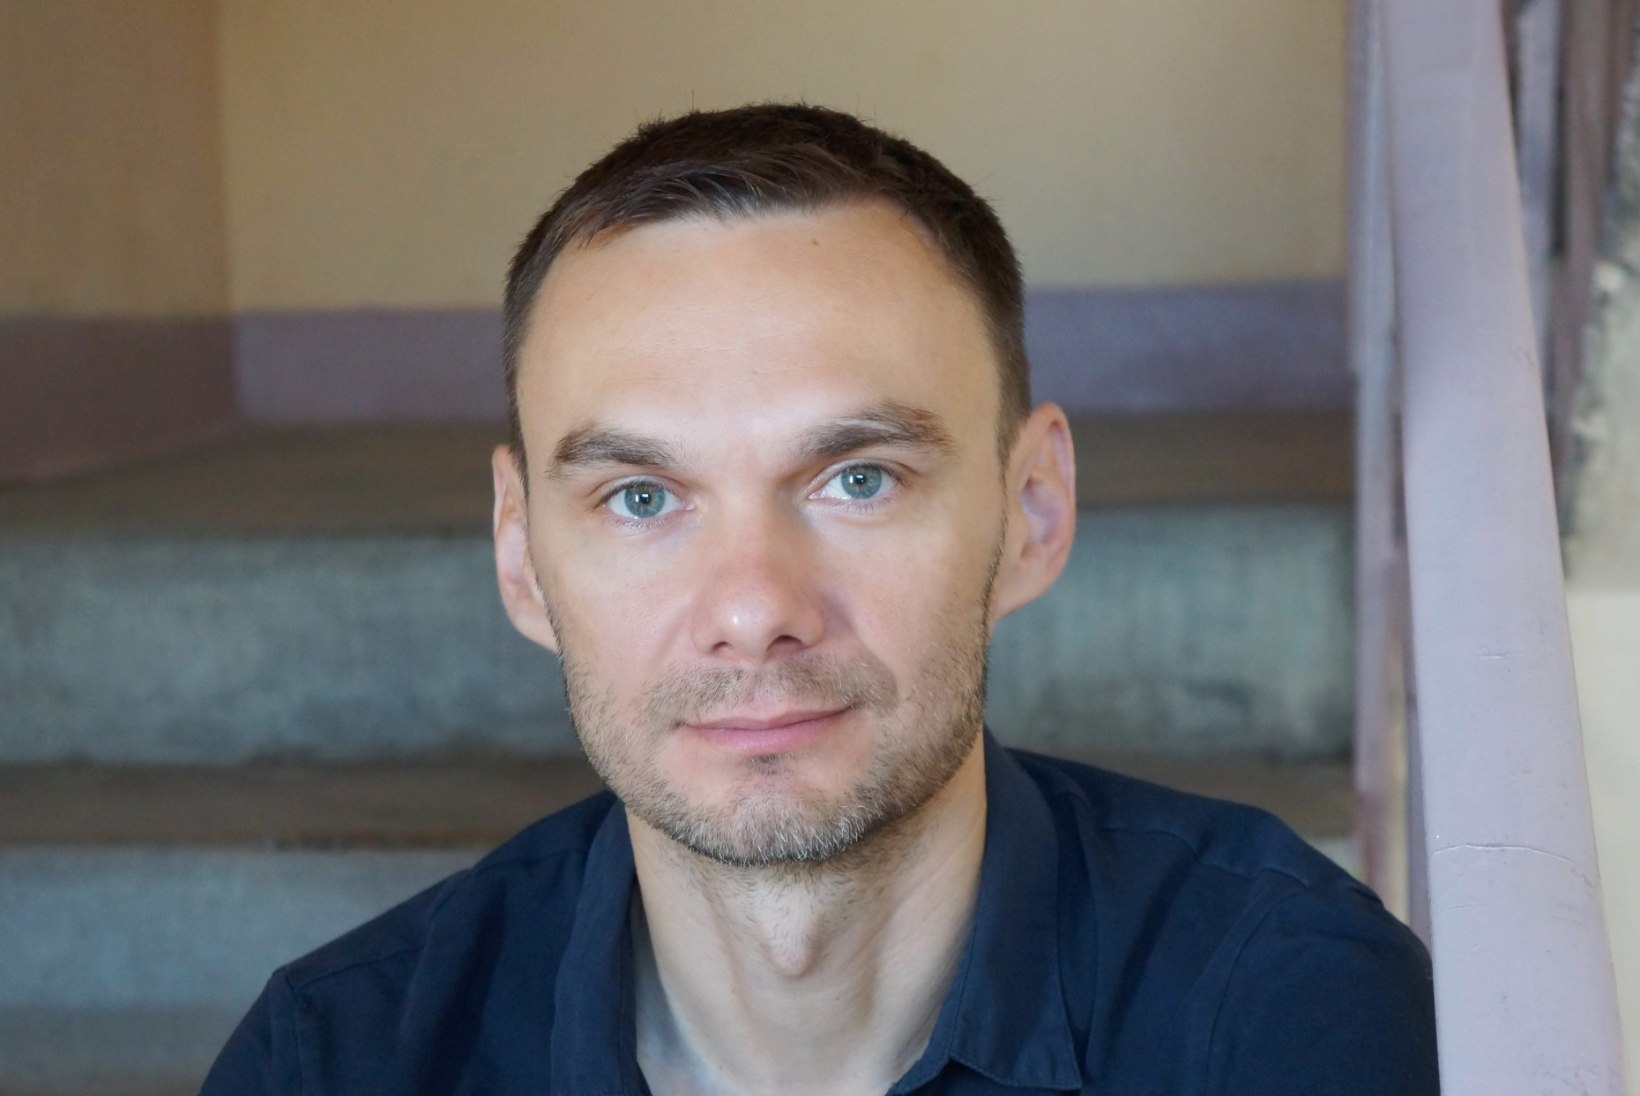 Eesti dokumentaalfilm "Protsess: Venemaa riik Oleg Sentsovi vastu" valiti Berliini filmifestivali programmi